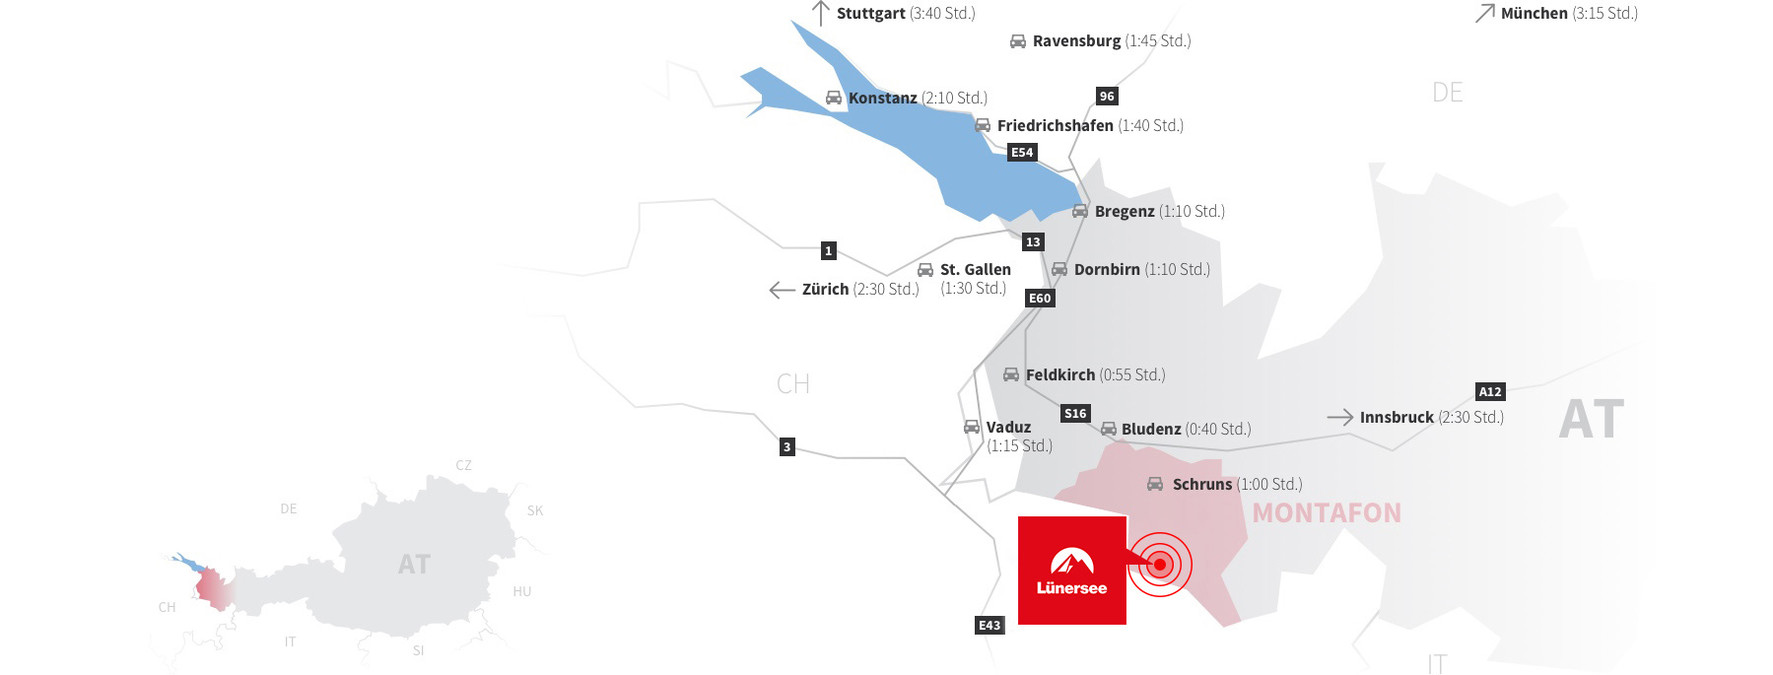 Anreisekarte (Auto) zum Lünersee im Brandnertal | © Golm Silvretta Lünersee Tourismus GmbH Bregenz